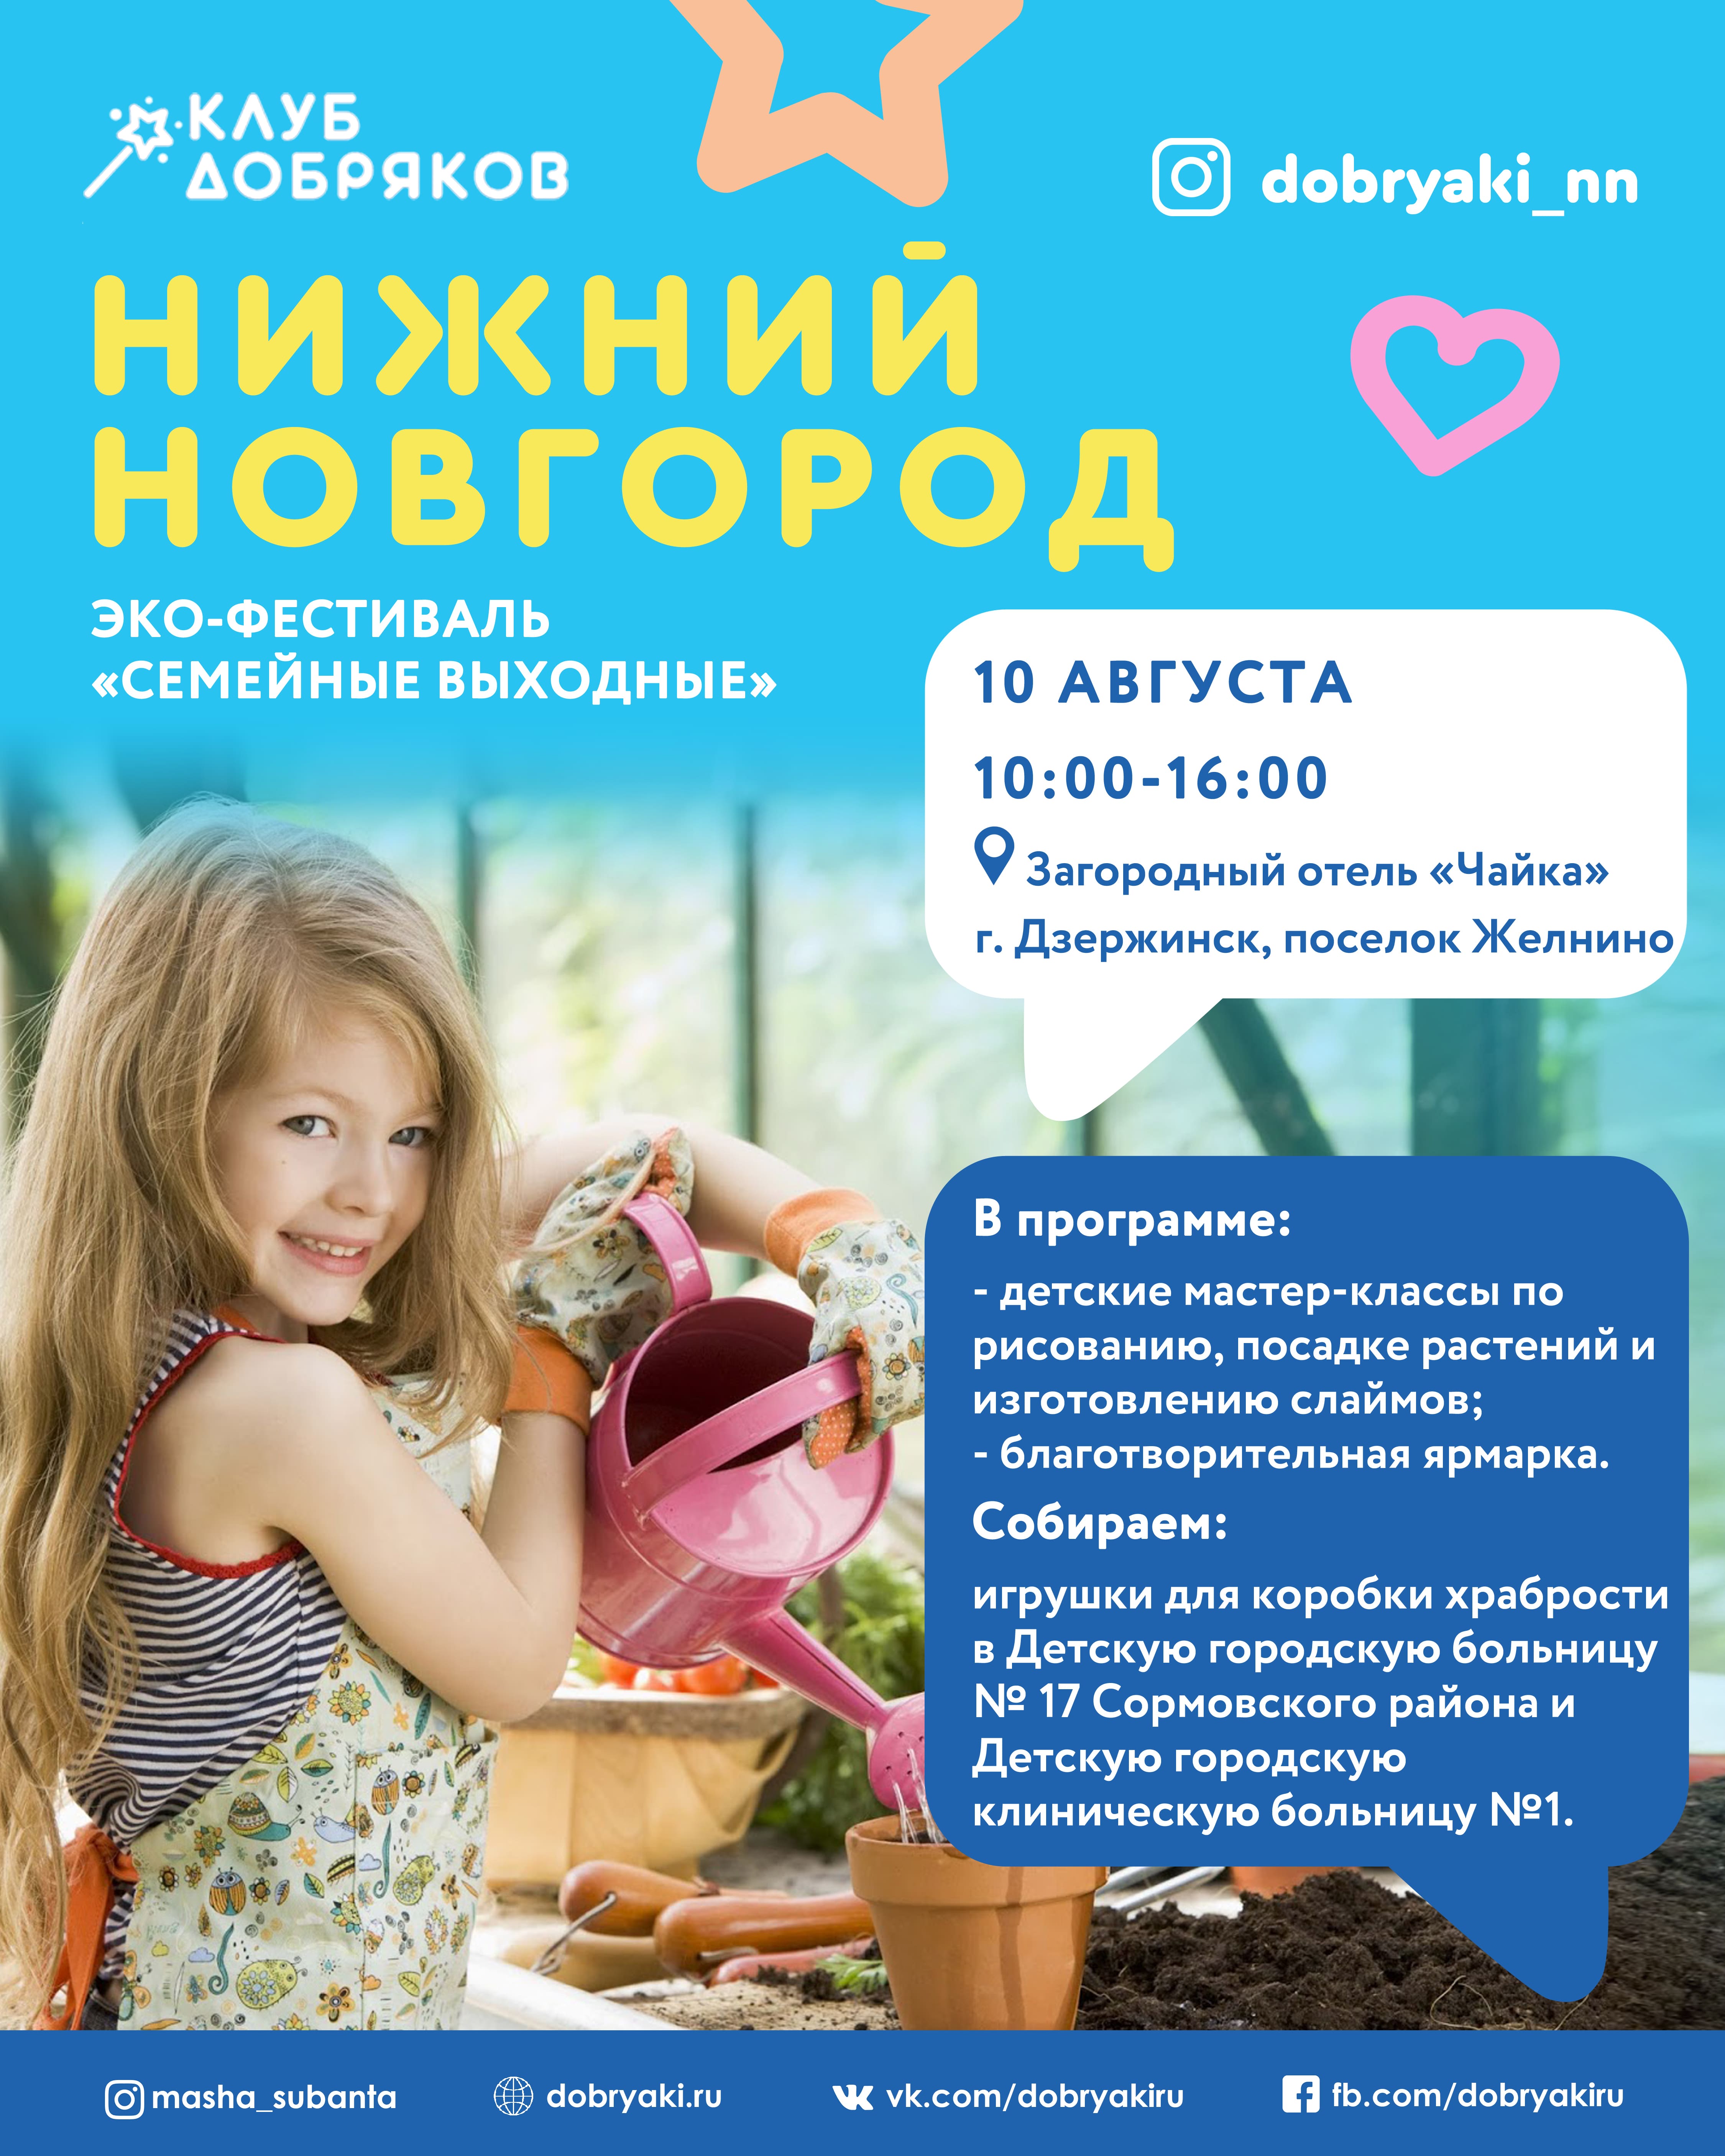 Нижегородские добряки приглашают на благотворительную ярмарку и мастер-классы